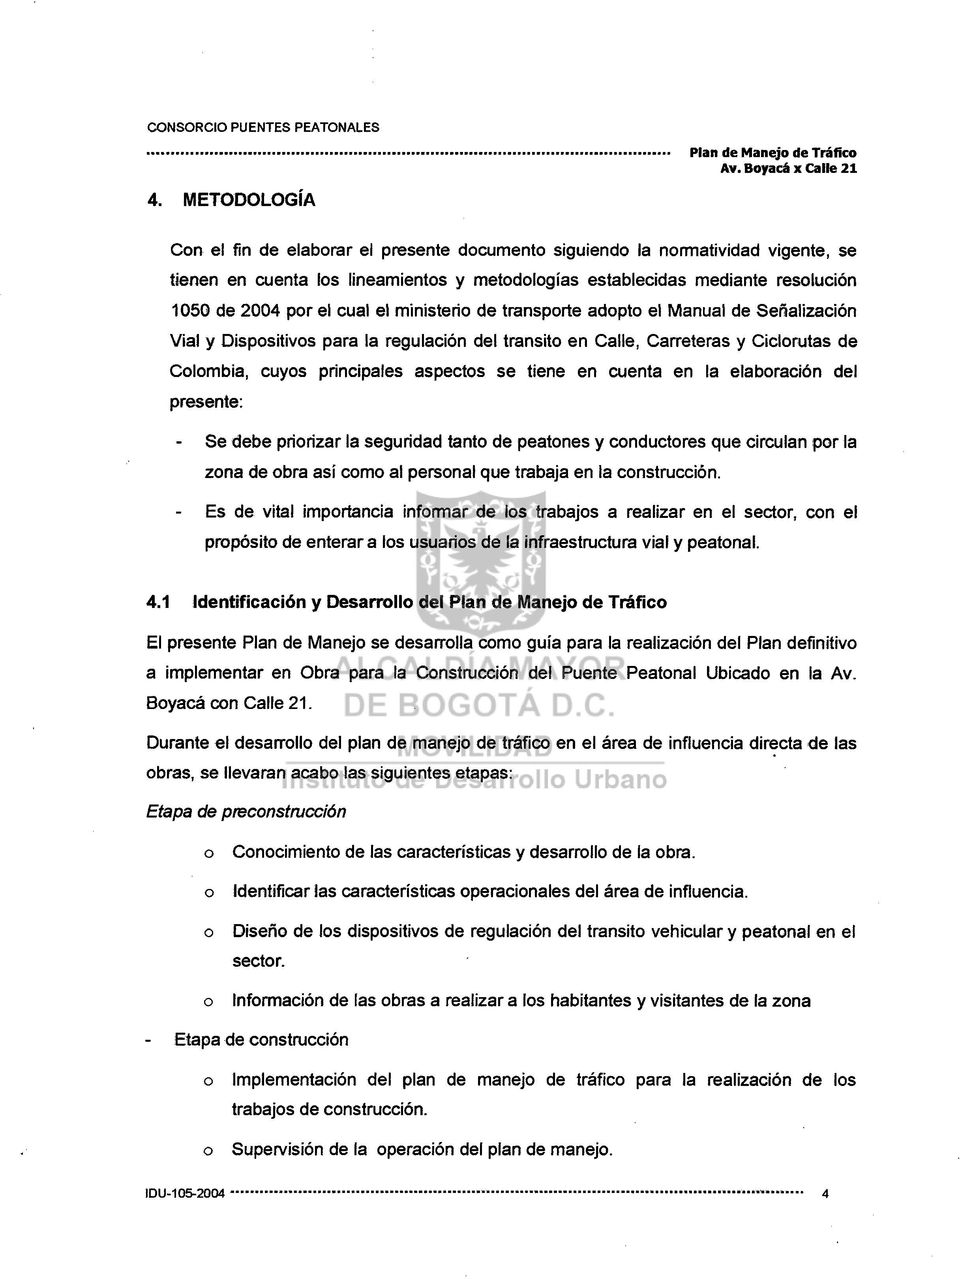 cual el ministerio de transporte adopto el Manual de Señalización Vial y Dispositivos para la regulación del transito en Calle, Carreteras y Ciclorutas de Colombia, cuyos principales aspectos se